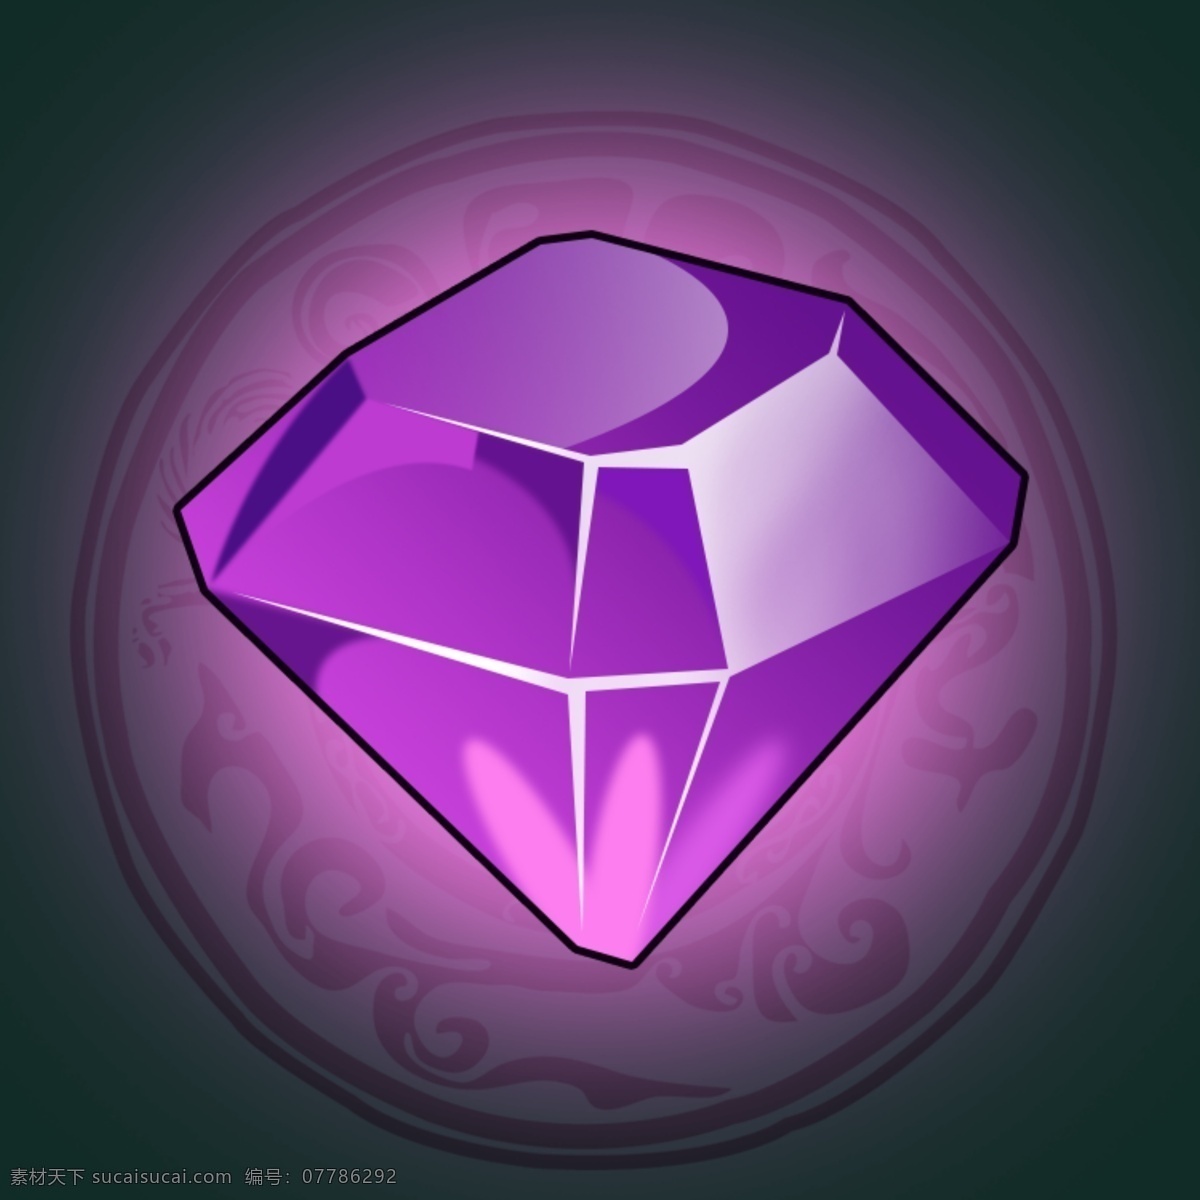 游戏 ui 图标 宝石 钻石 游戏ui图标 宝石素材 宝石图标 钻石图标 钻石素材 原创设计 分层